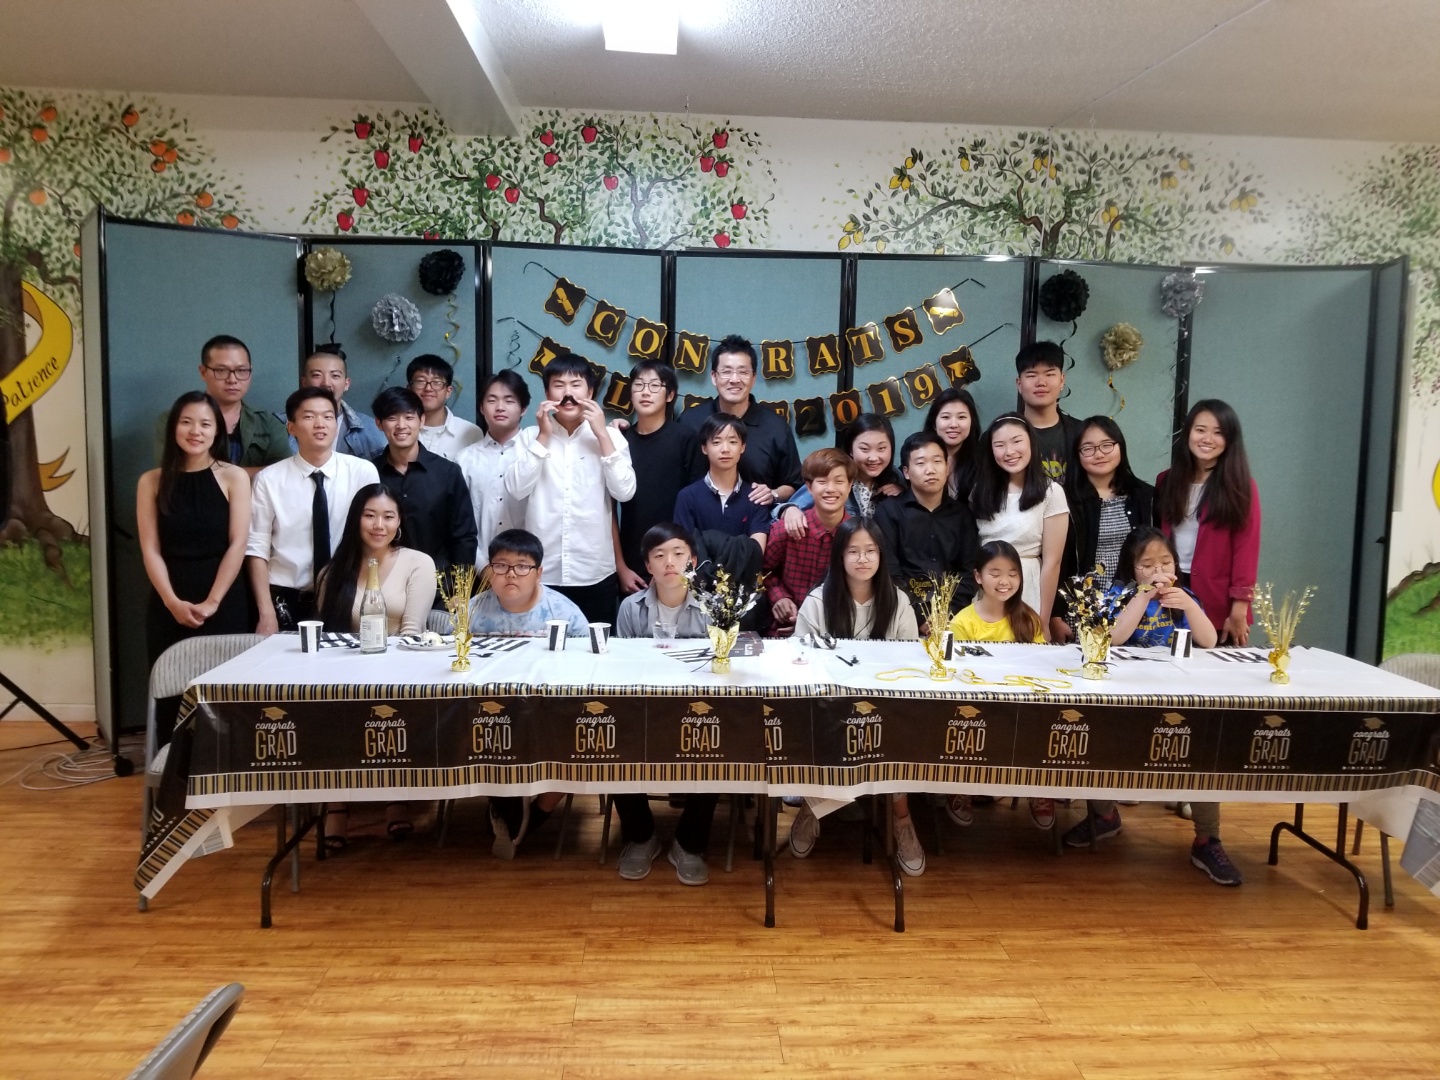 06/08/2019 Graduation Banquet